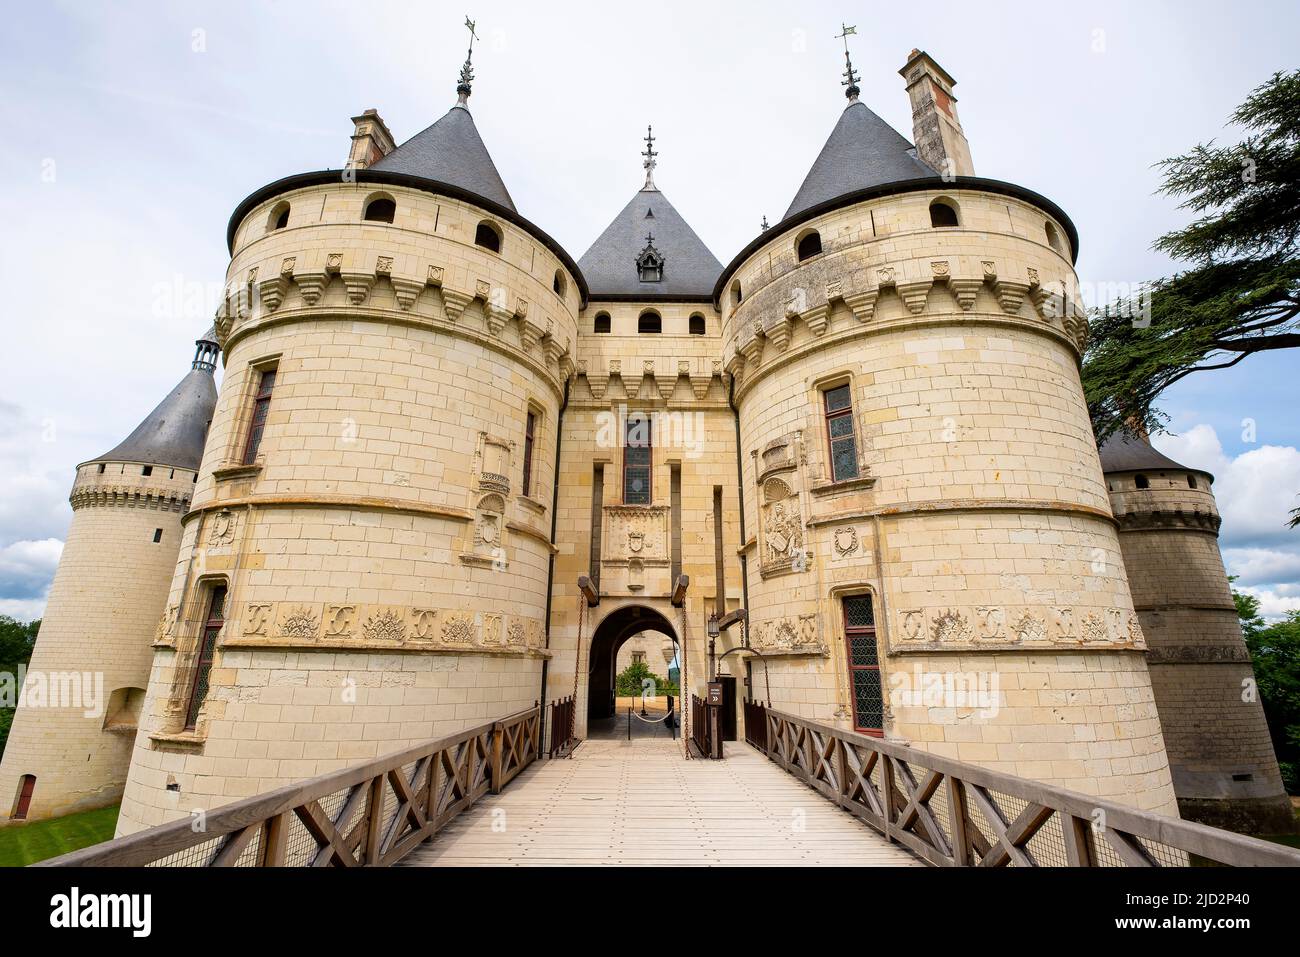 Le Chateau de Chaumont-sur-Loire. Domaine de Chaumont-sur-Loire, Centre-Val de Loire, France. Stock Photo